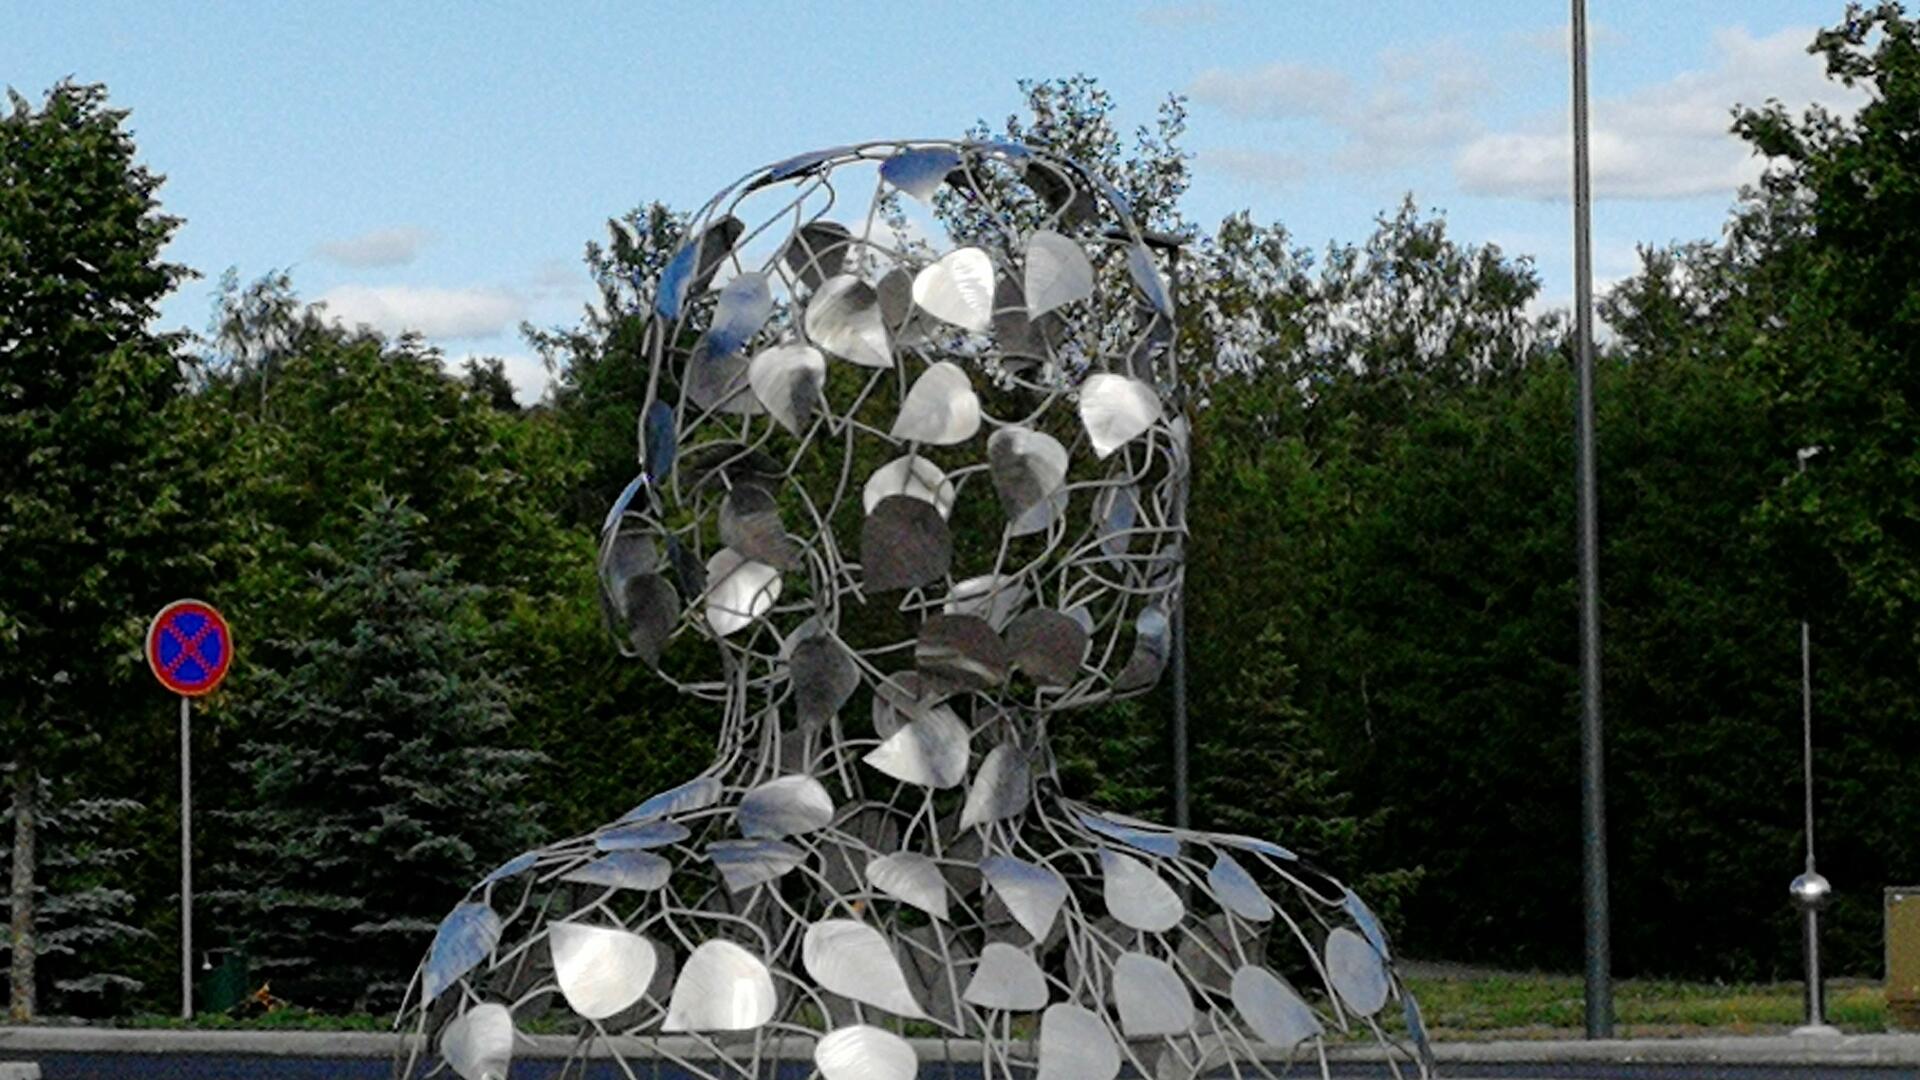 taideteos, jossa metallista tehty runko ja päälle kiinnitetyt lehdet muodostavat naisen rintakuvan